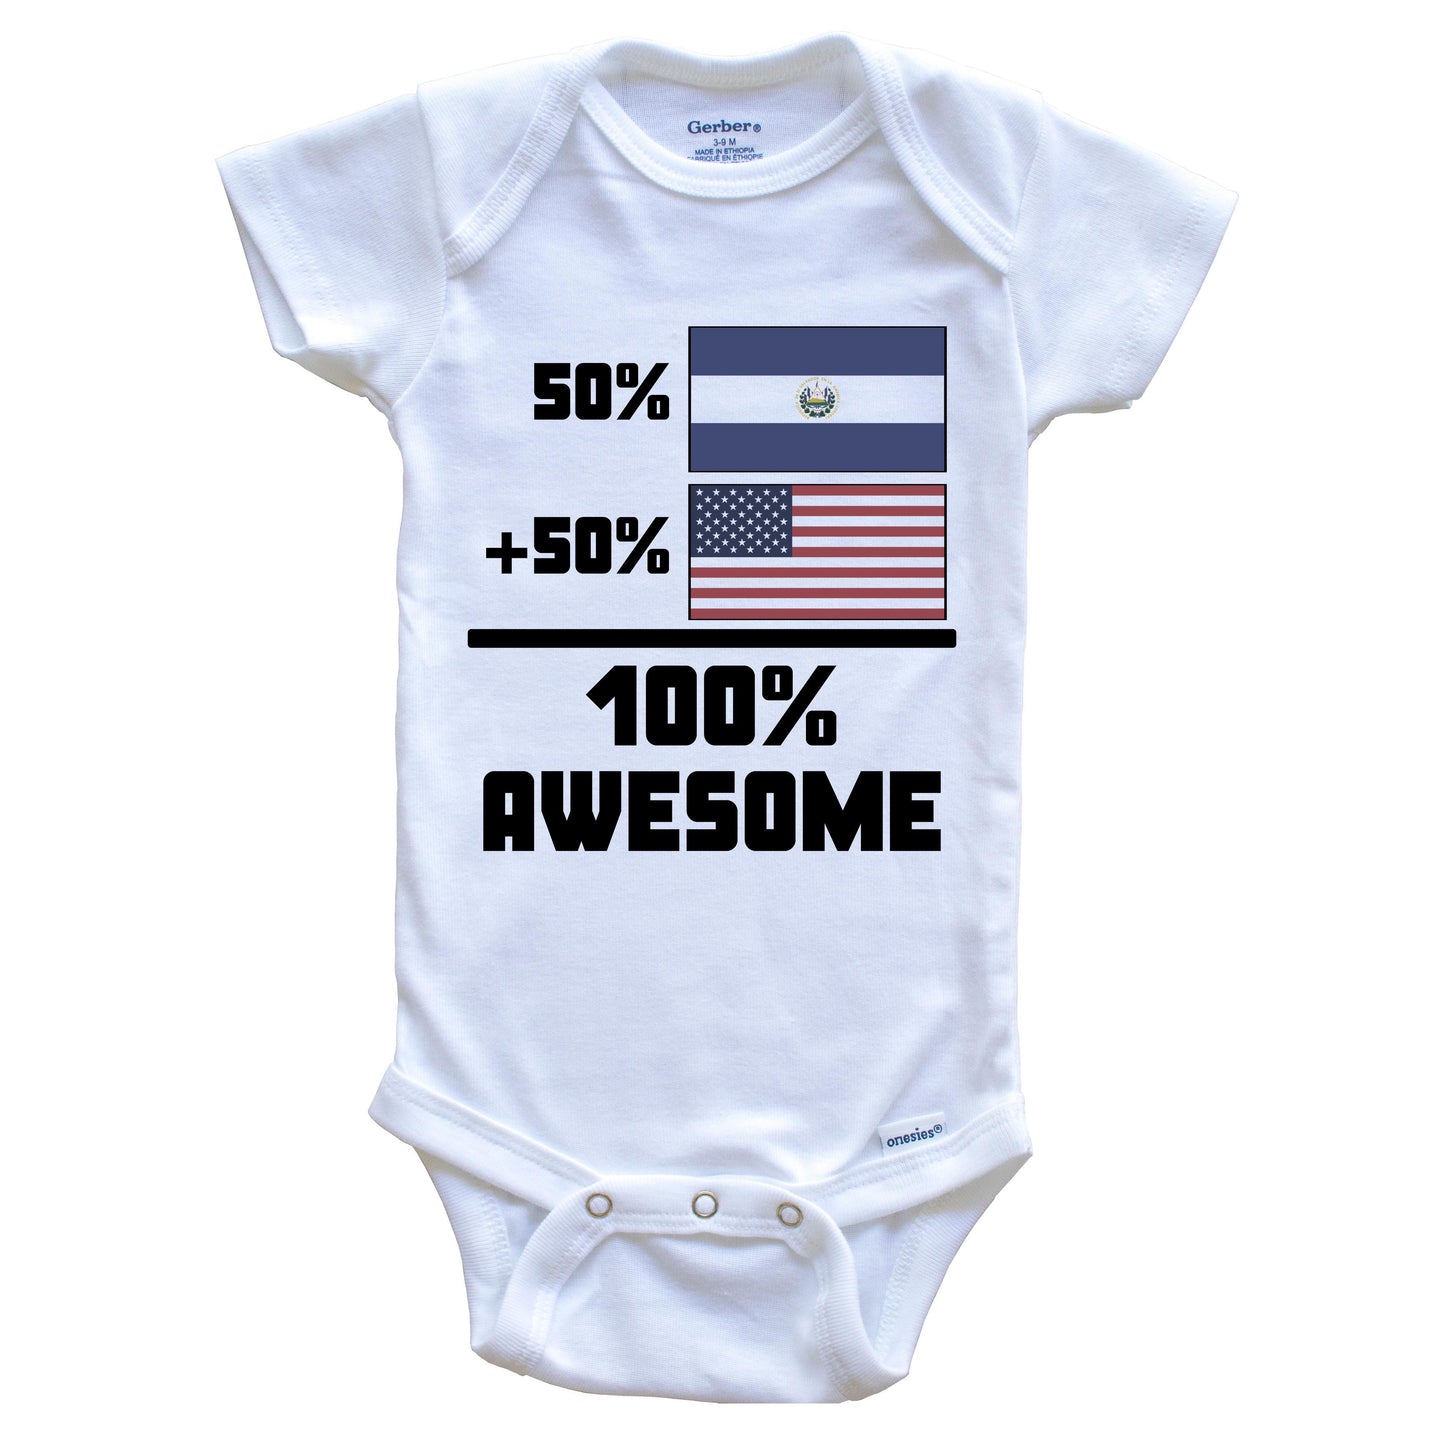 50% El Salvadorian 50% American 100% Awesome Funny Baby Onesie